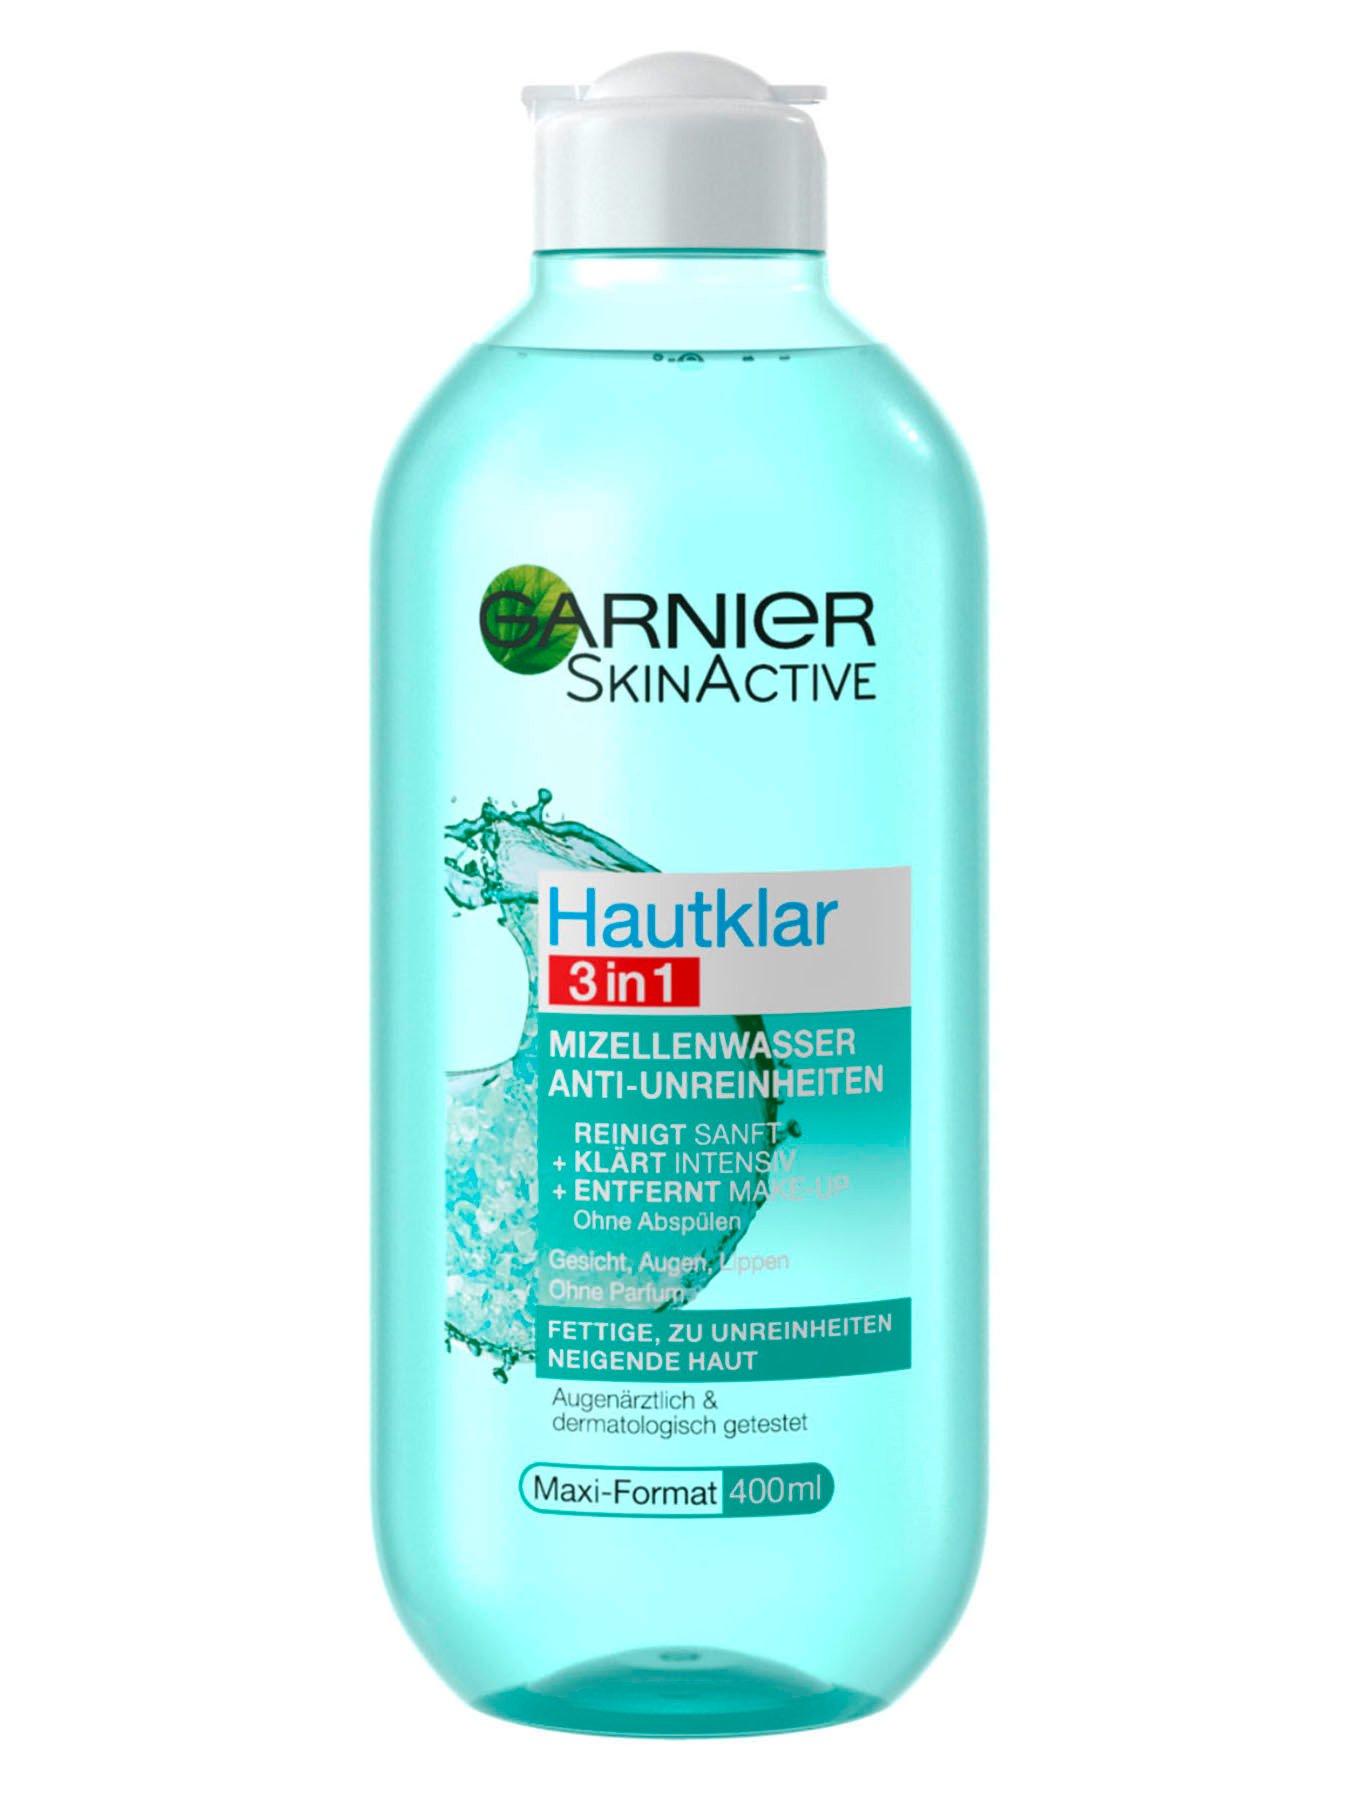 Hautklar 3in1 Garnier Anti-Unreinheiten Mizellenwasser 